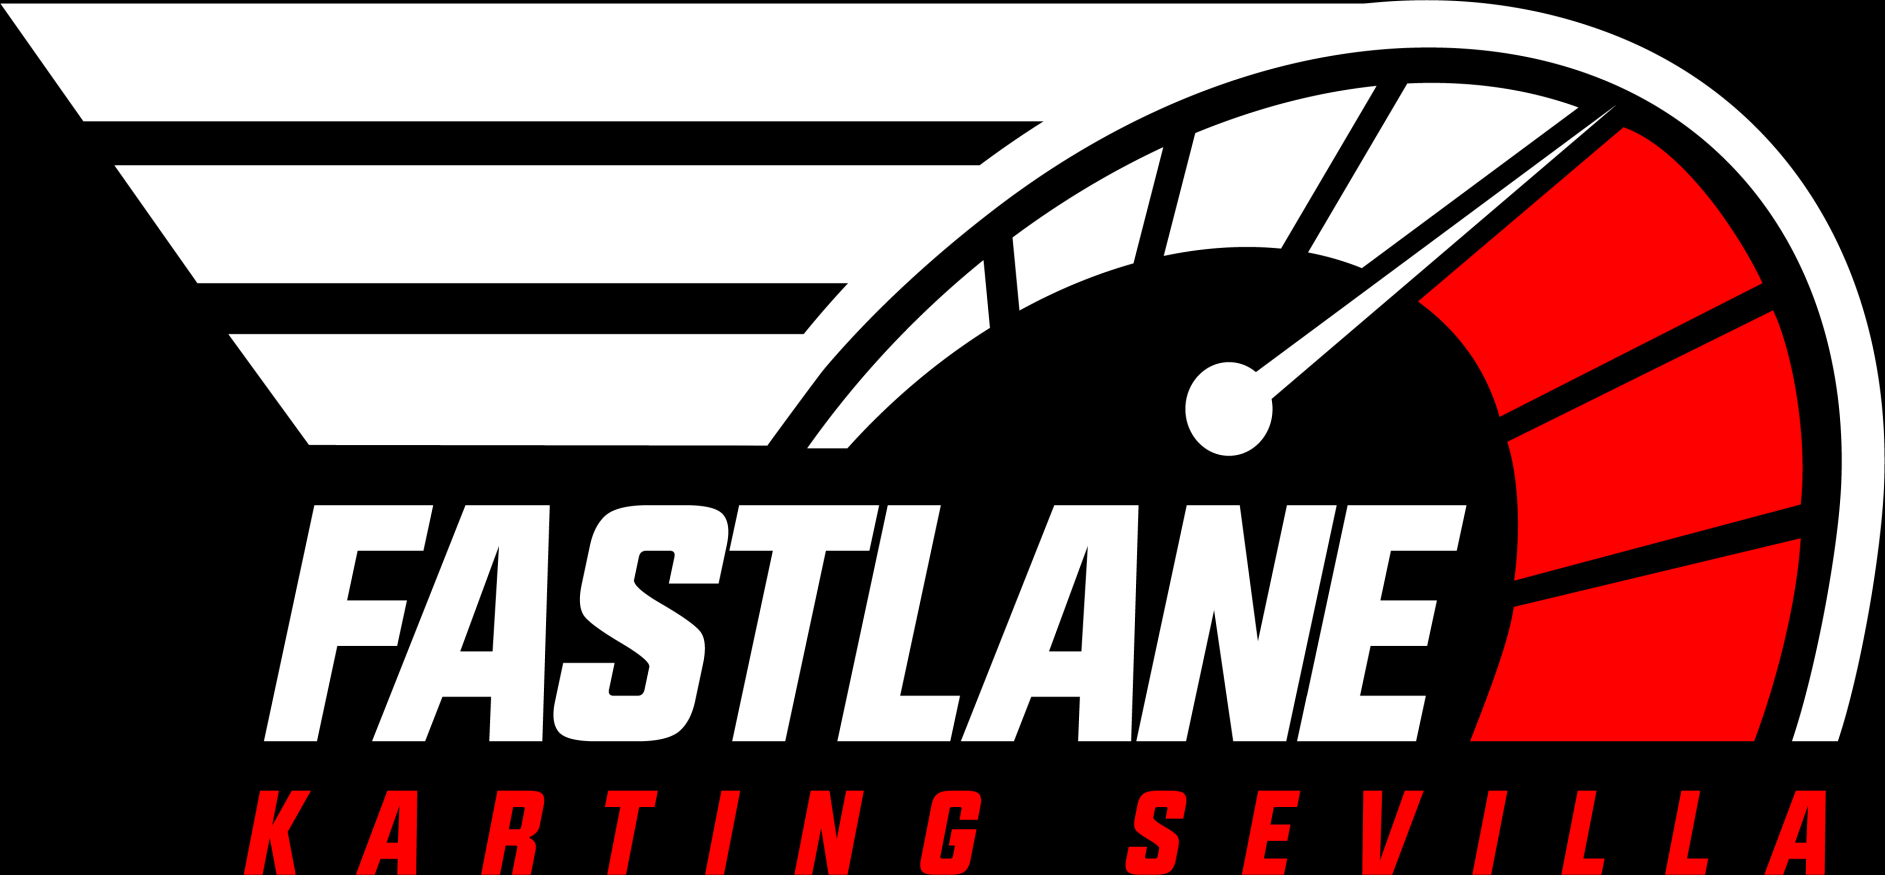 logo fastlane.png